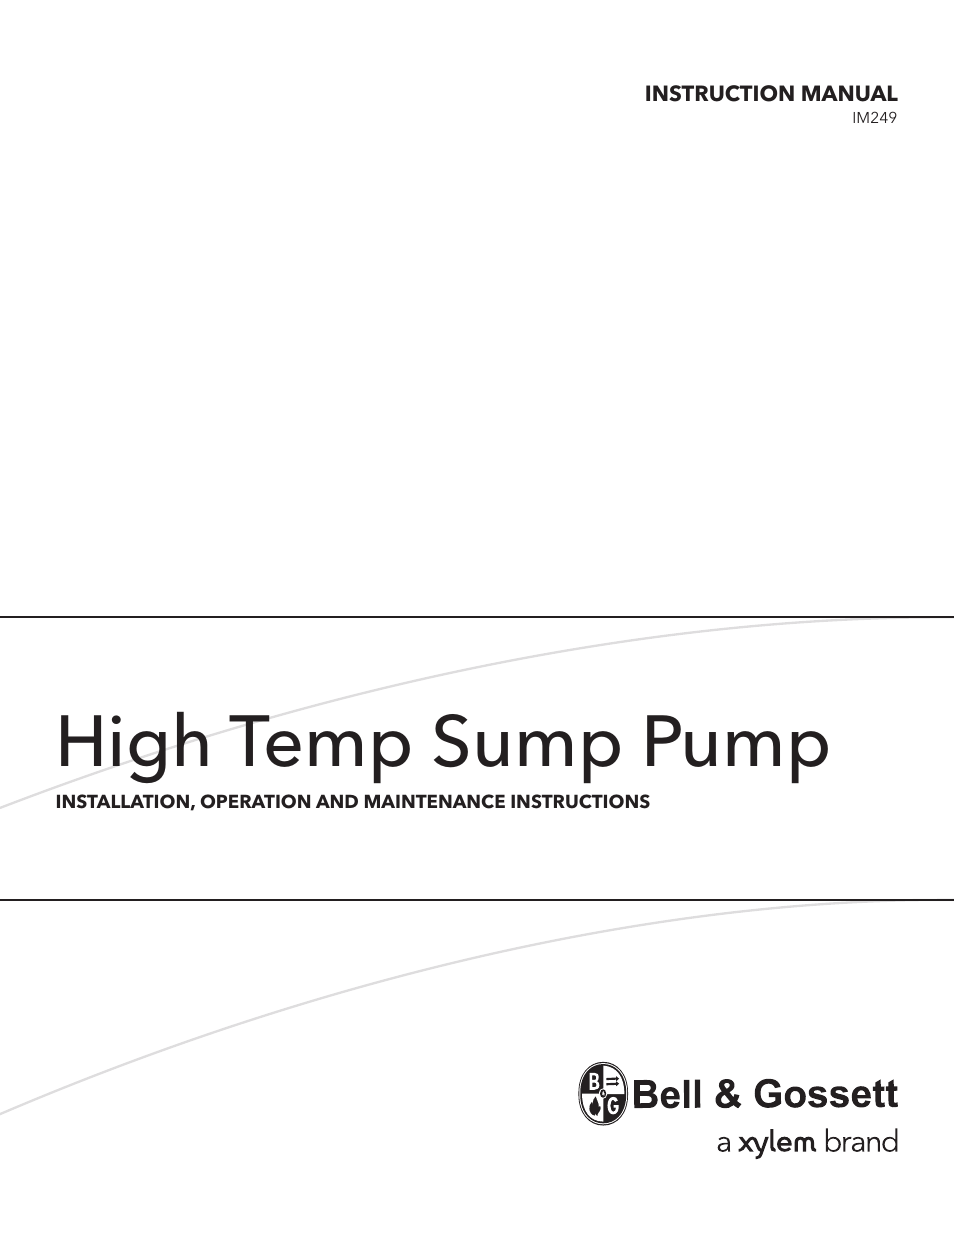 Bell & Gossett High Temp Sump Pump